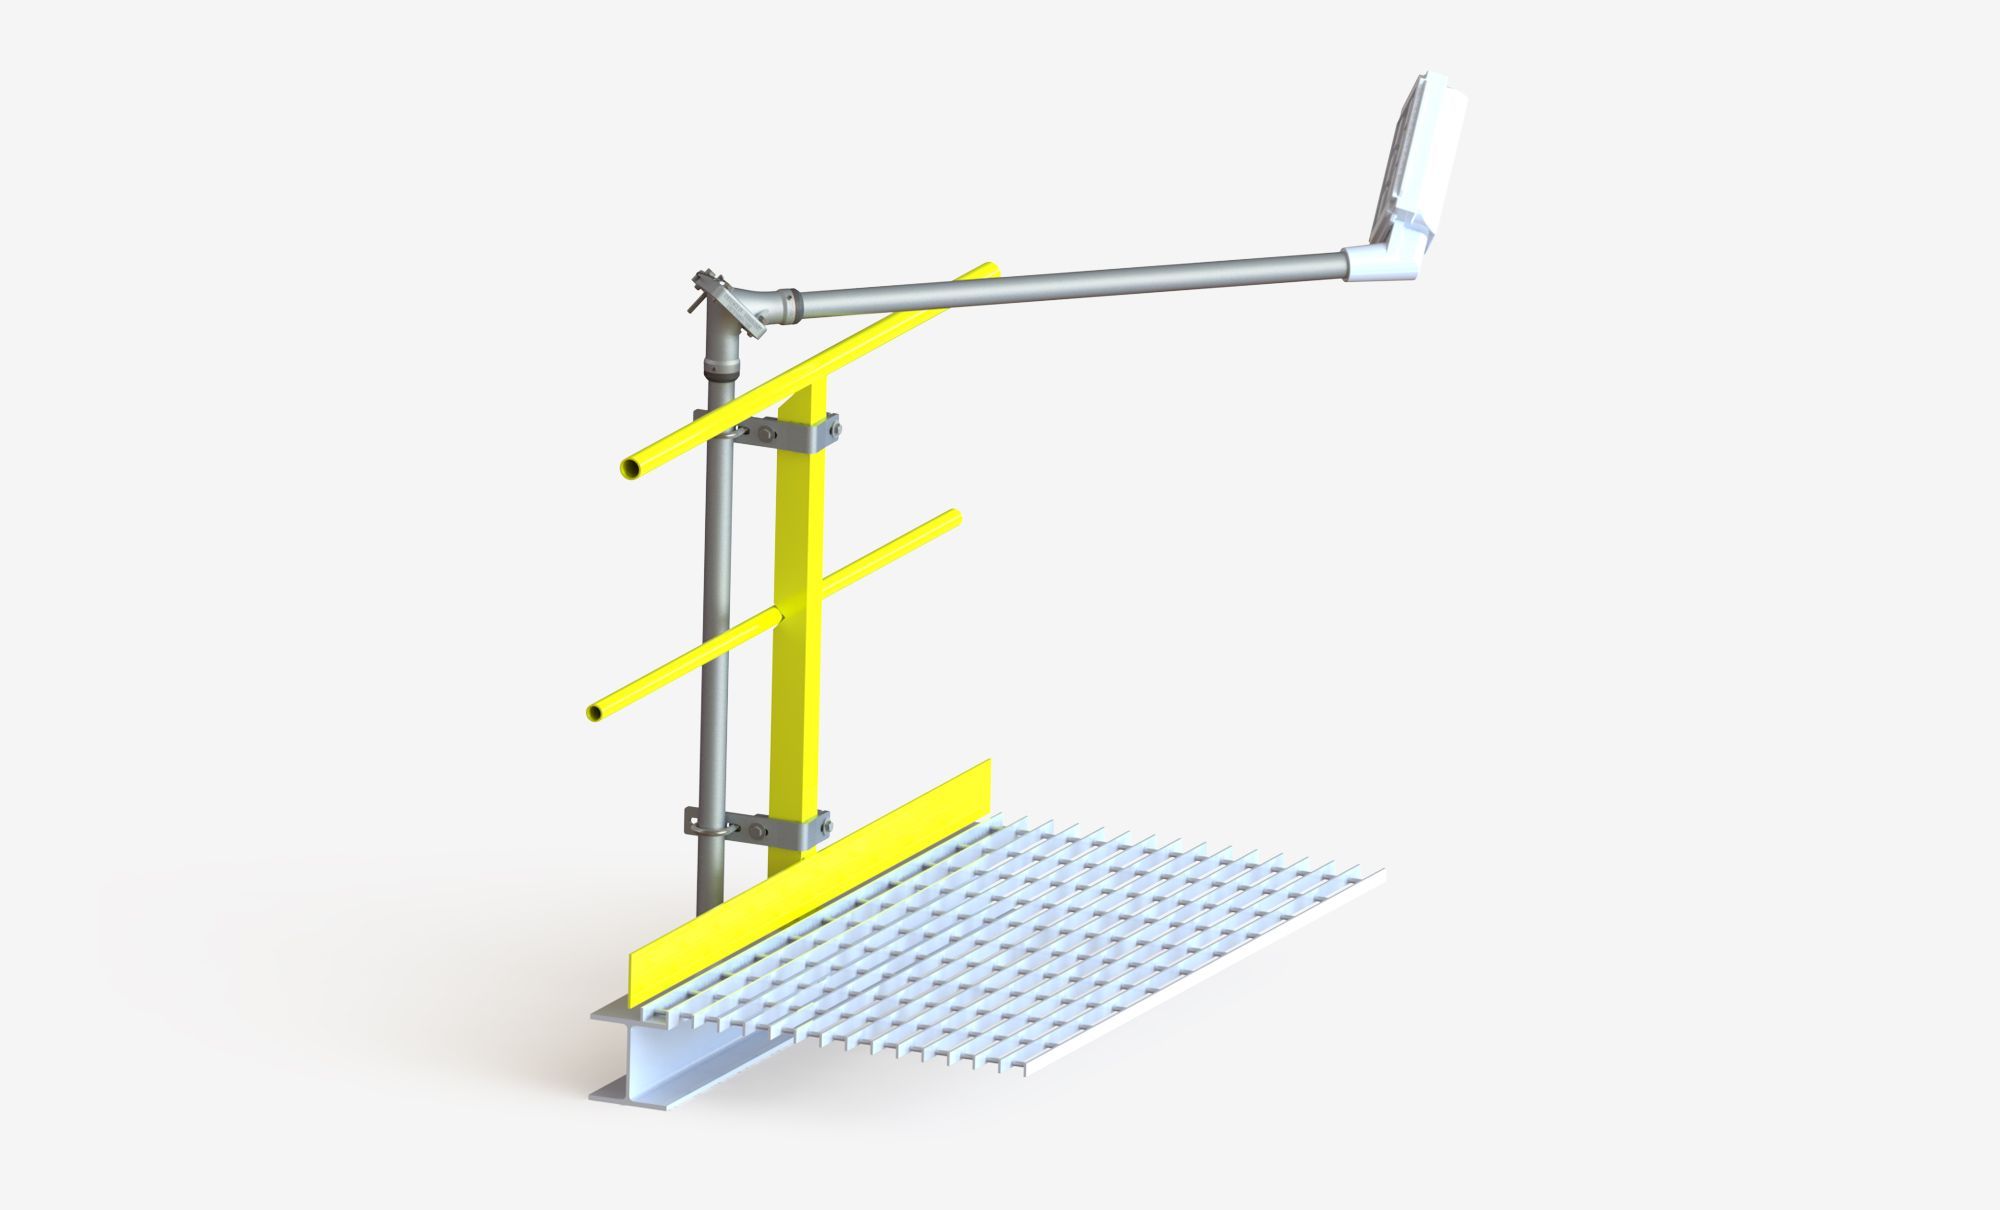 Industrial Lighting Design - Access to Lighting Fixtures on Platforms and Walkways